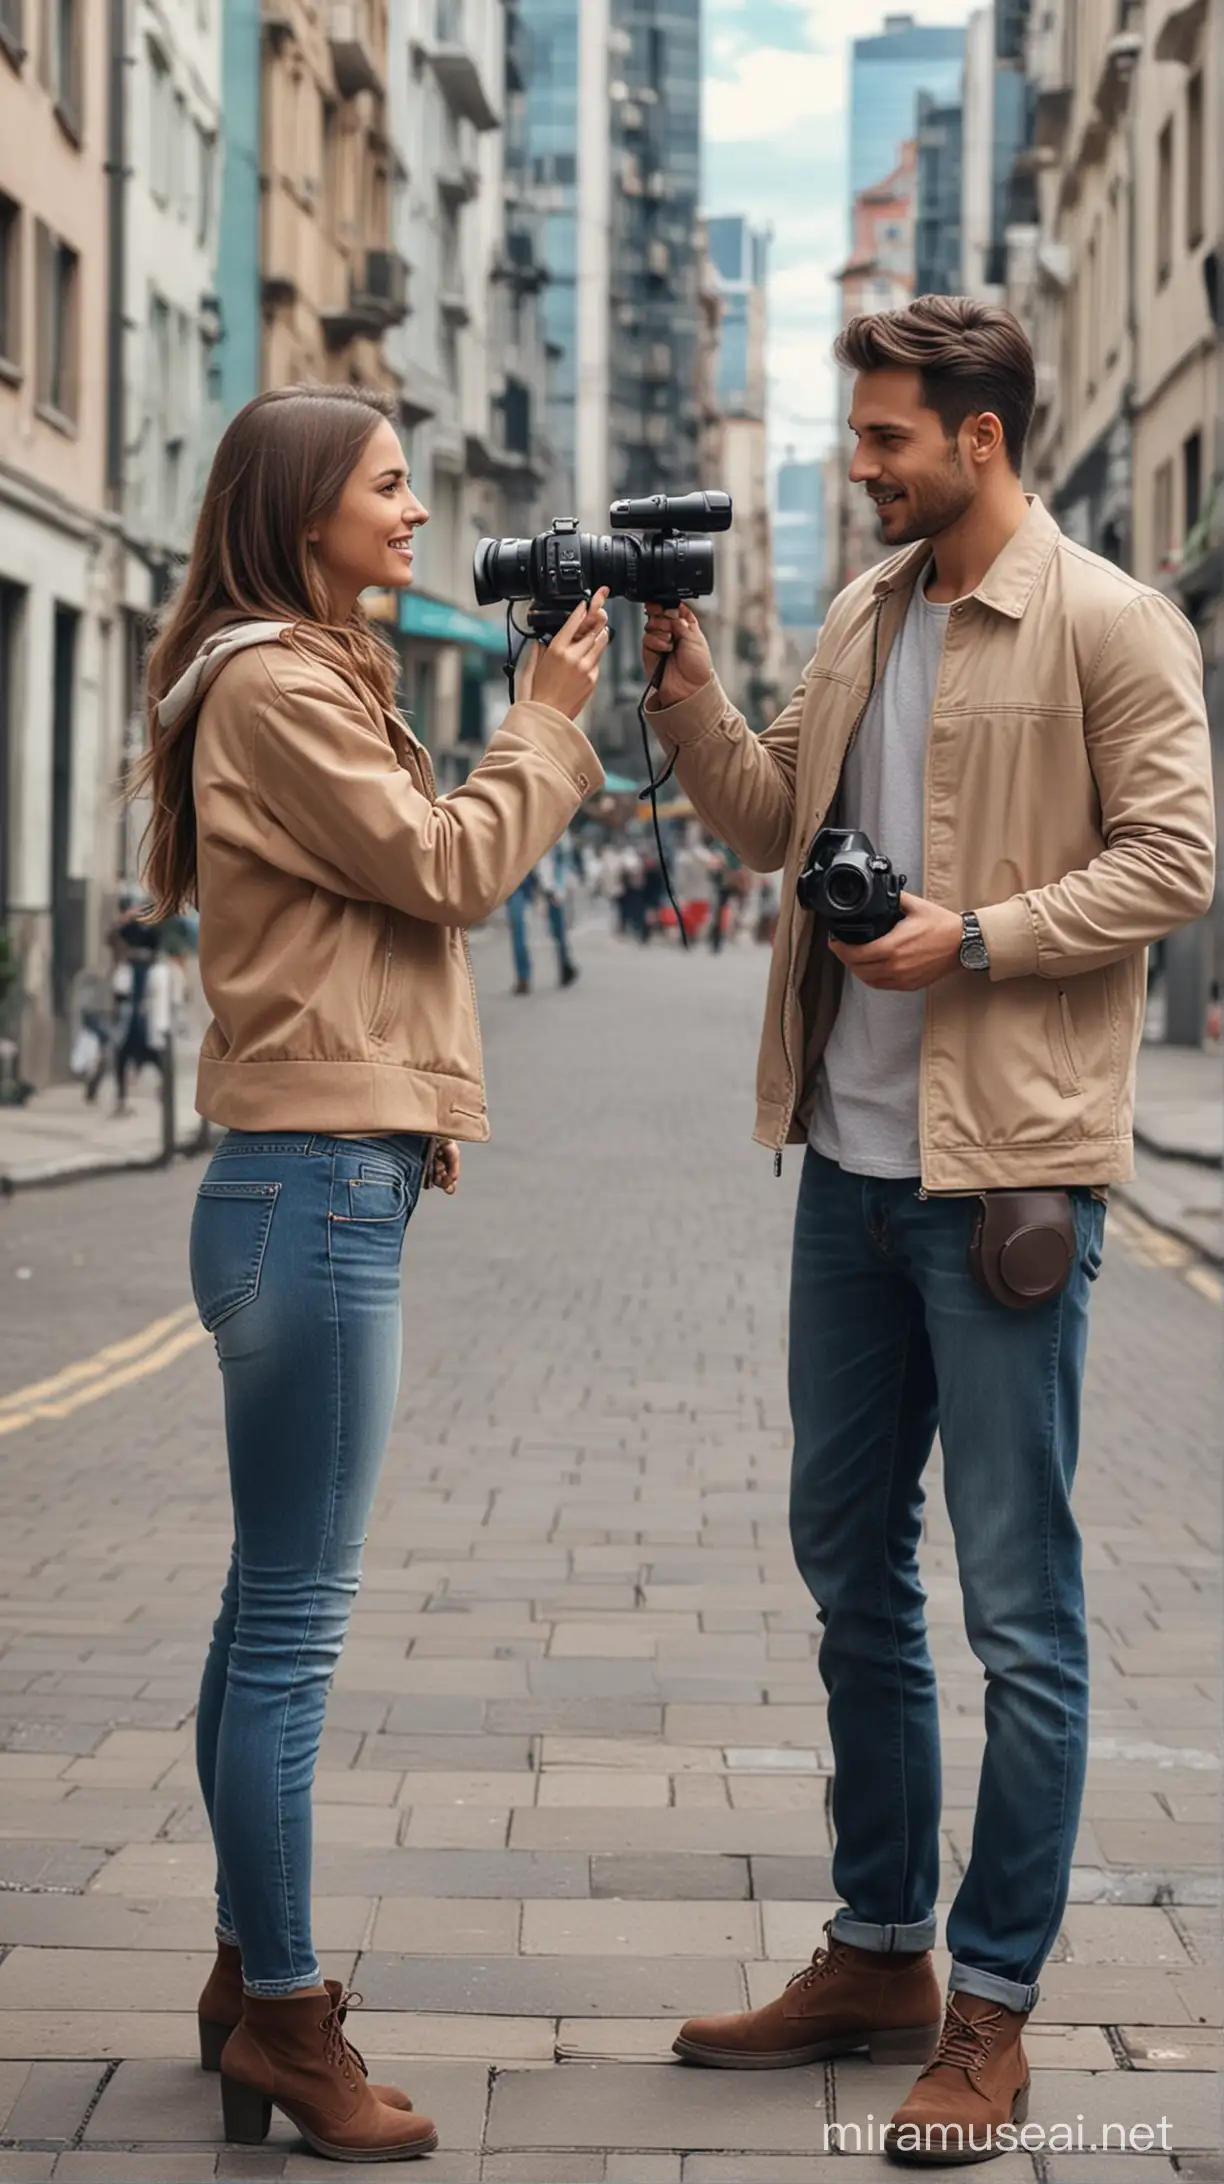 Сгенерируй изображение мужчины, который держит в руках видеокамеру и снимает на видео девушку. Изображения должны быть реалистичными, Фон город